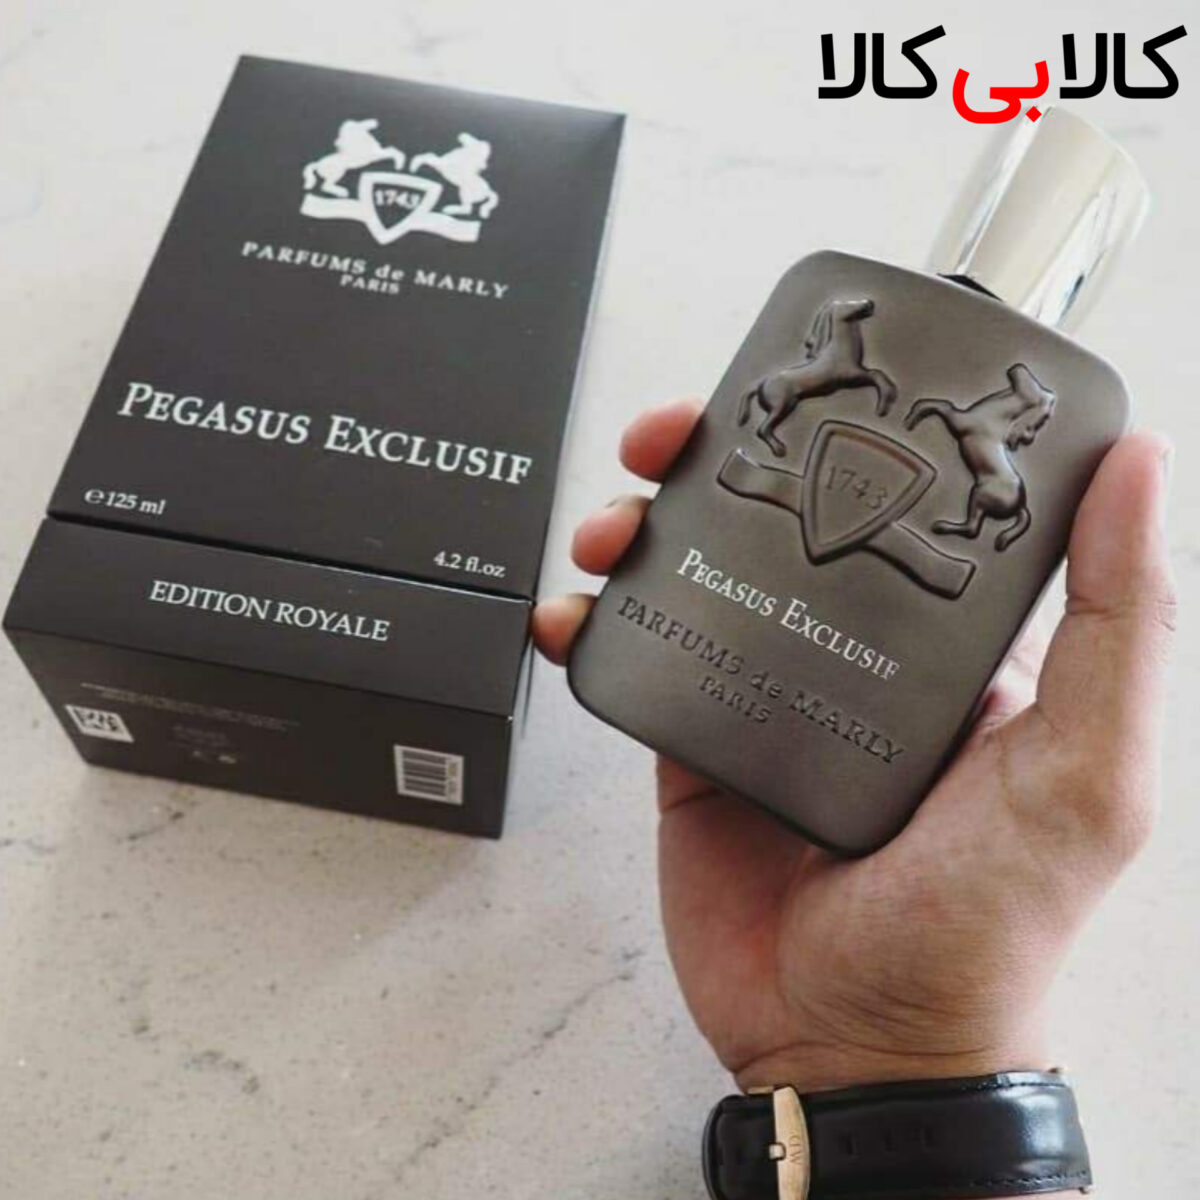 ادوپرفیوم مارلی پگاسوس اکسکلوسیف Parfums de Marly Pegasus Exclusif مردانه حجم 125 میلی لیتر باکس اصلی